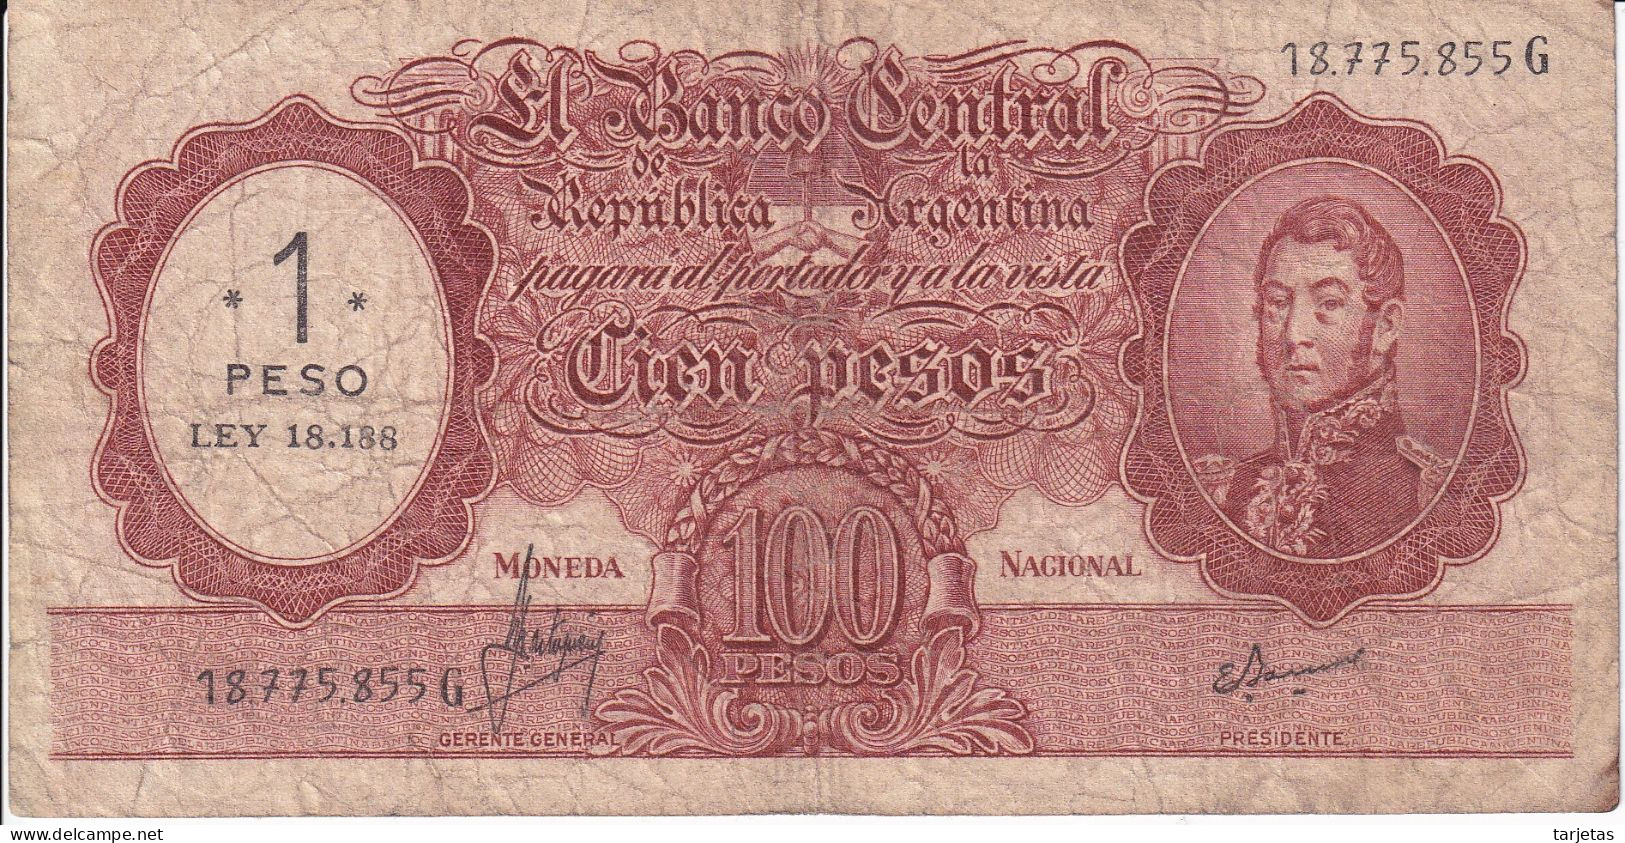 BILLETE DE ARGENTINA DE 100 PESOS RESELLADO 1 PESO LEY 18188 (BANKNOTE) - Argentina